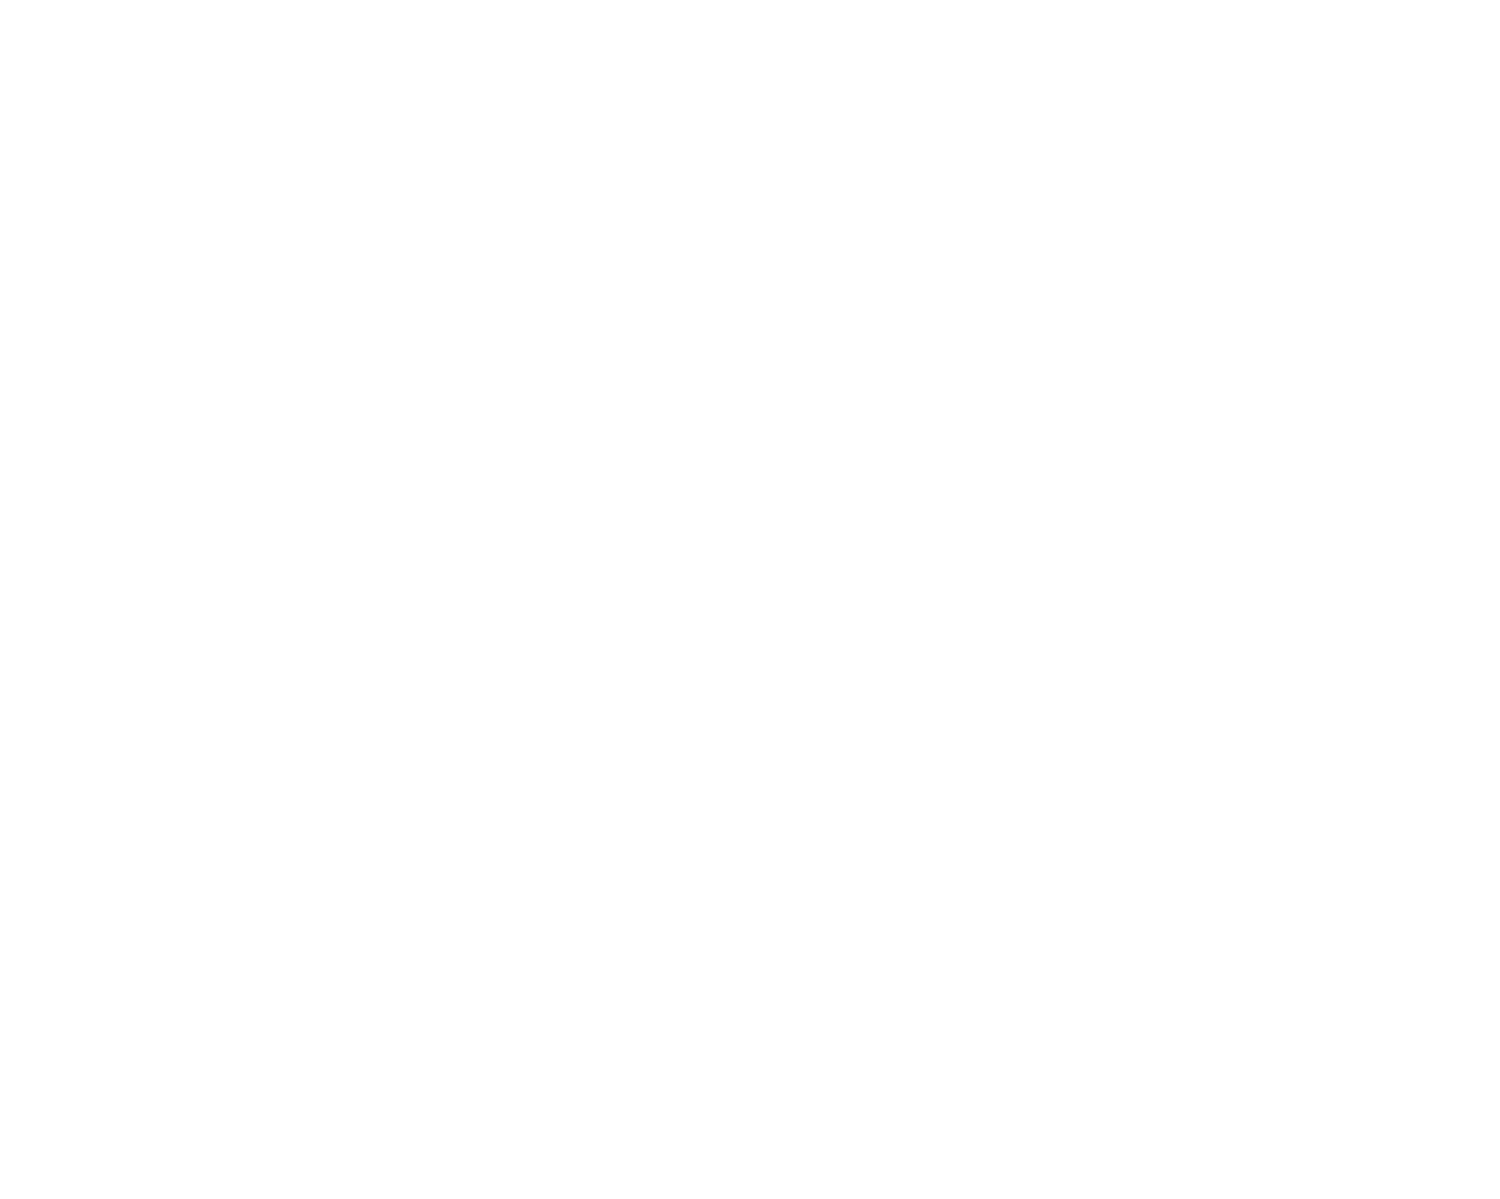 La Baguette Bakery